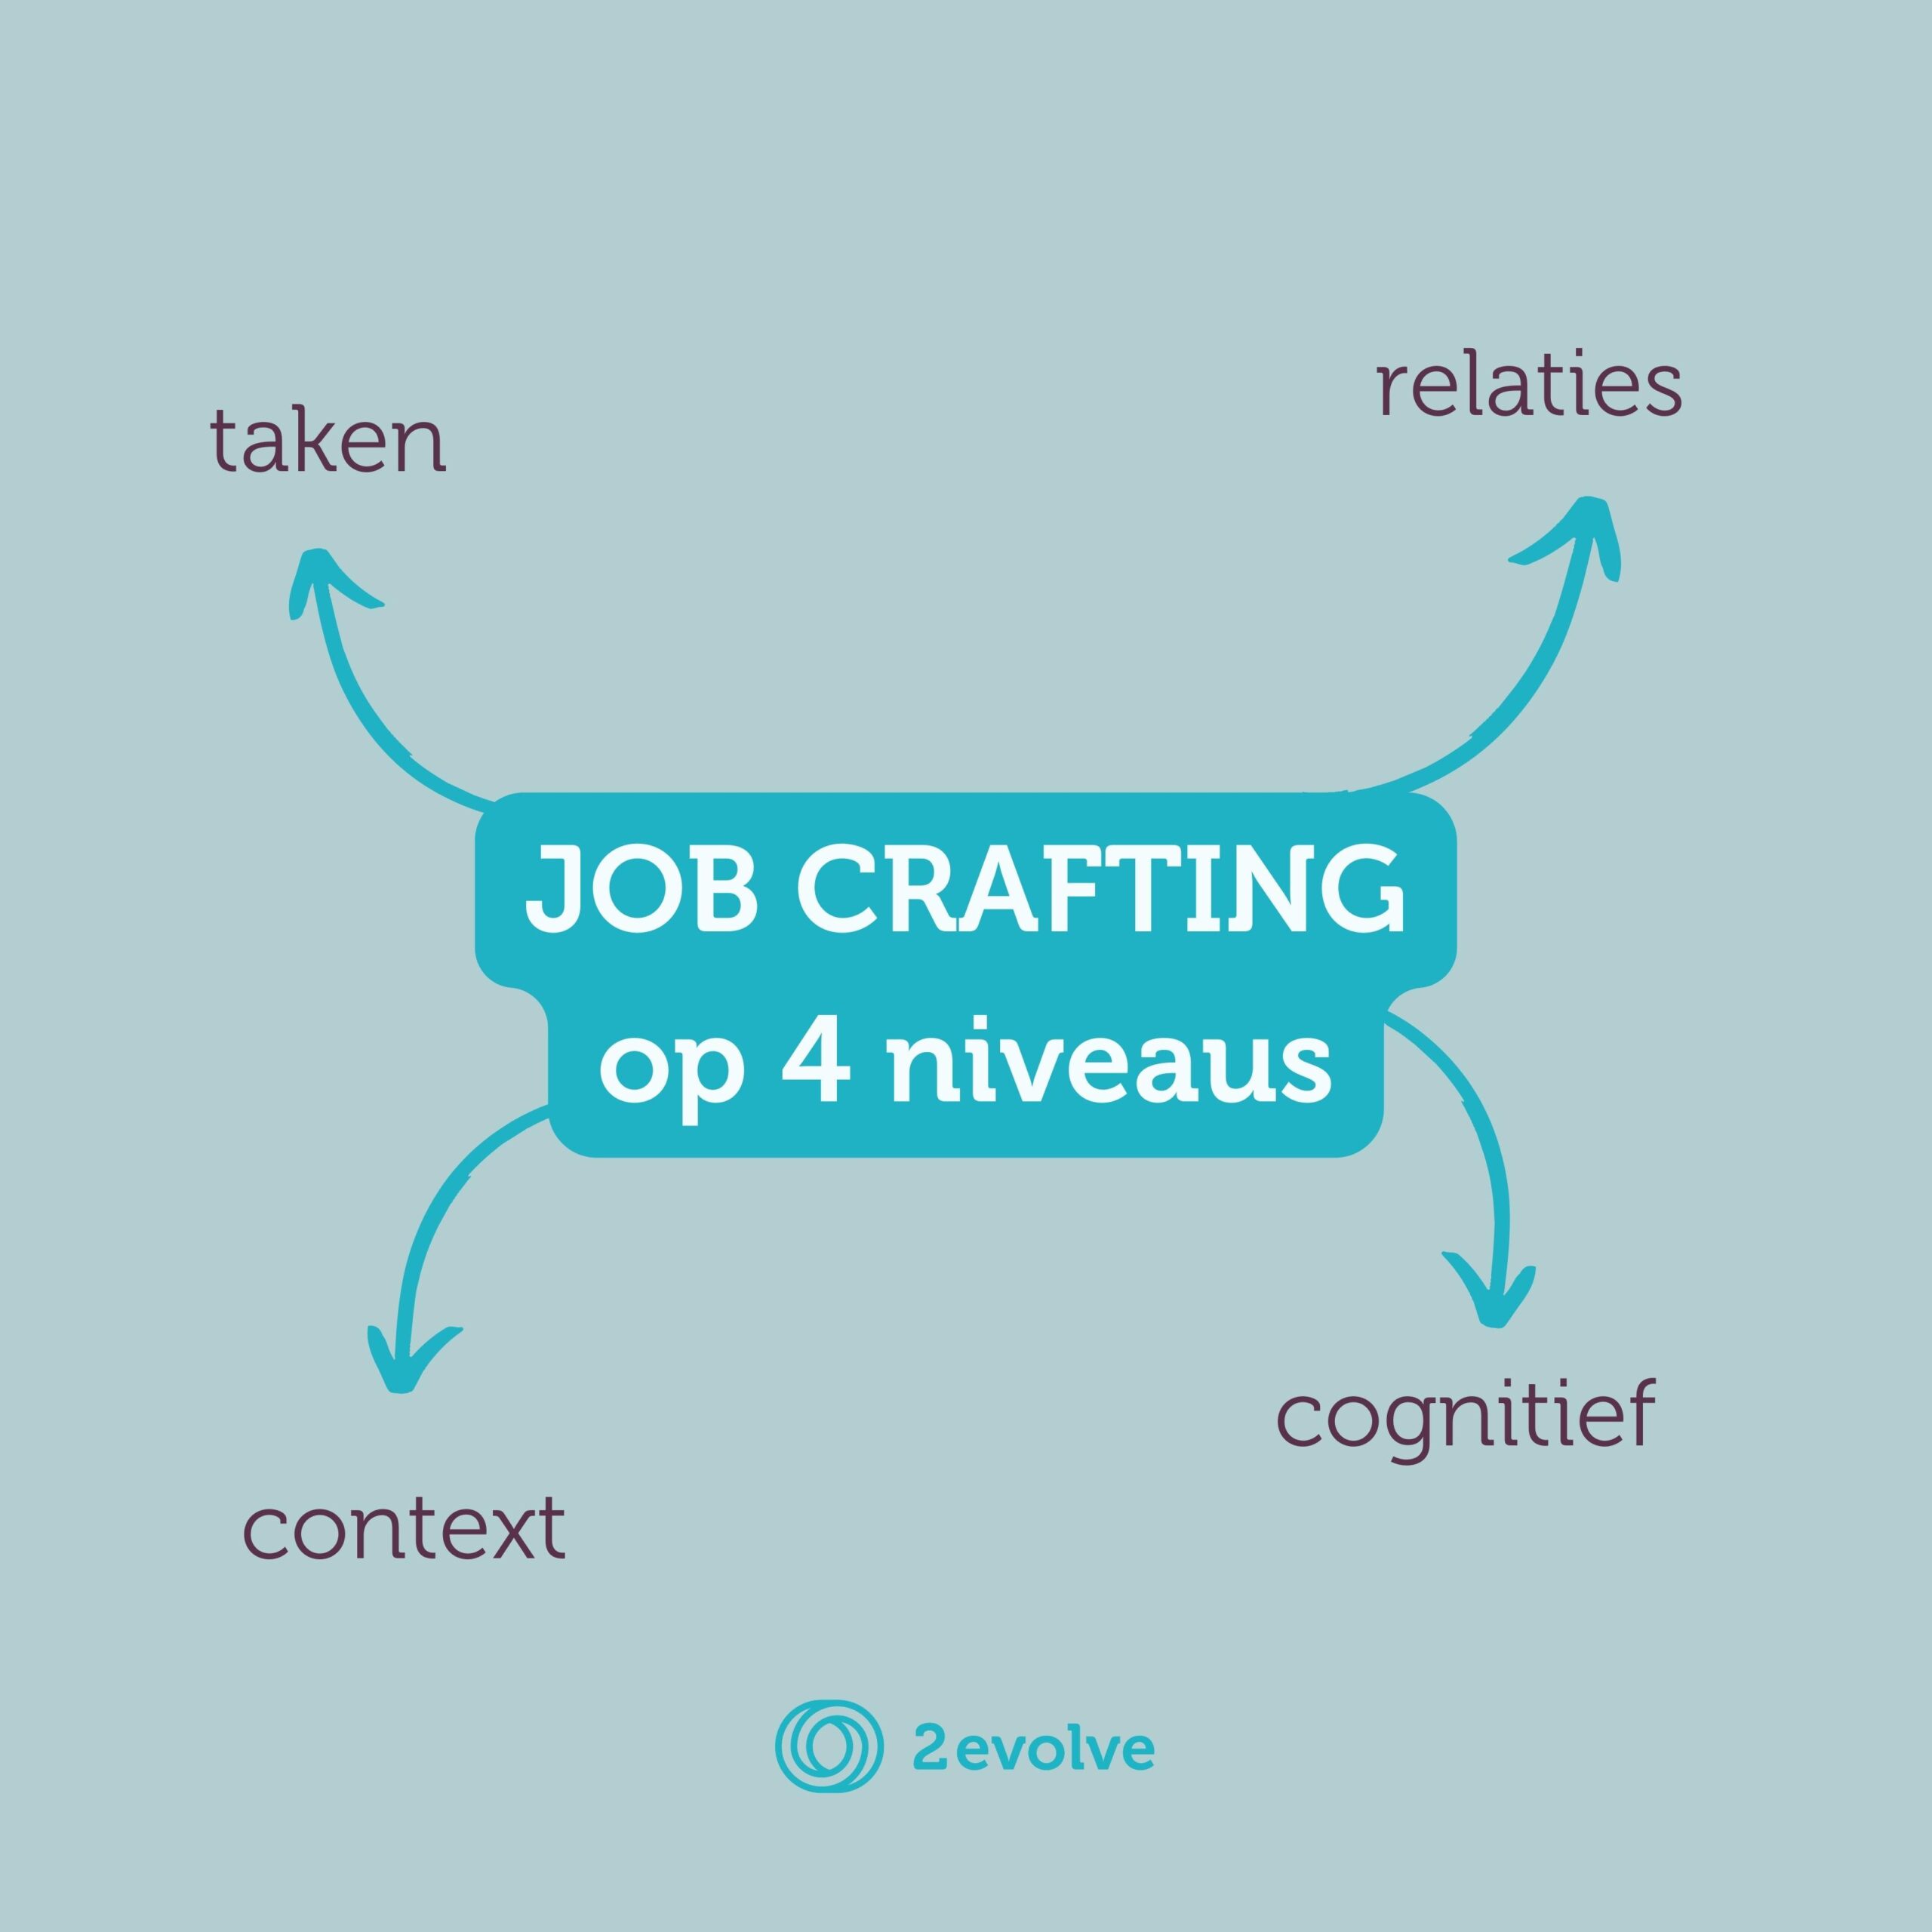 Job craften op 4 niveaus: relationeel, cognitief, taken en context.